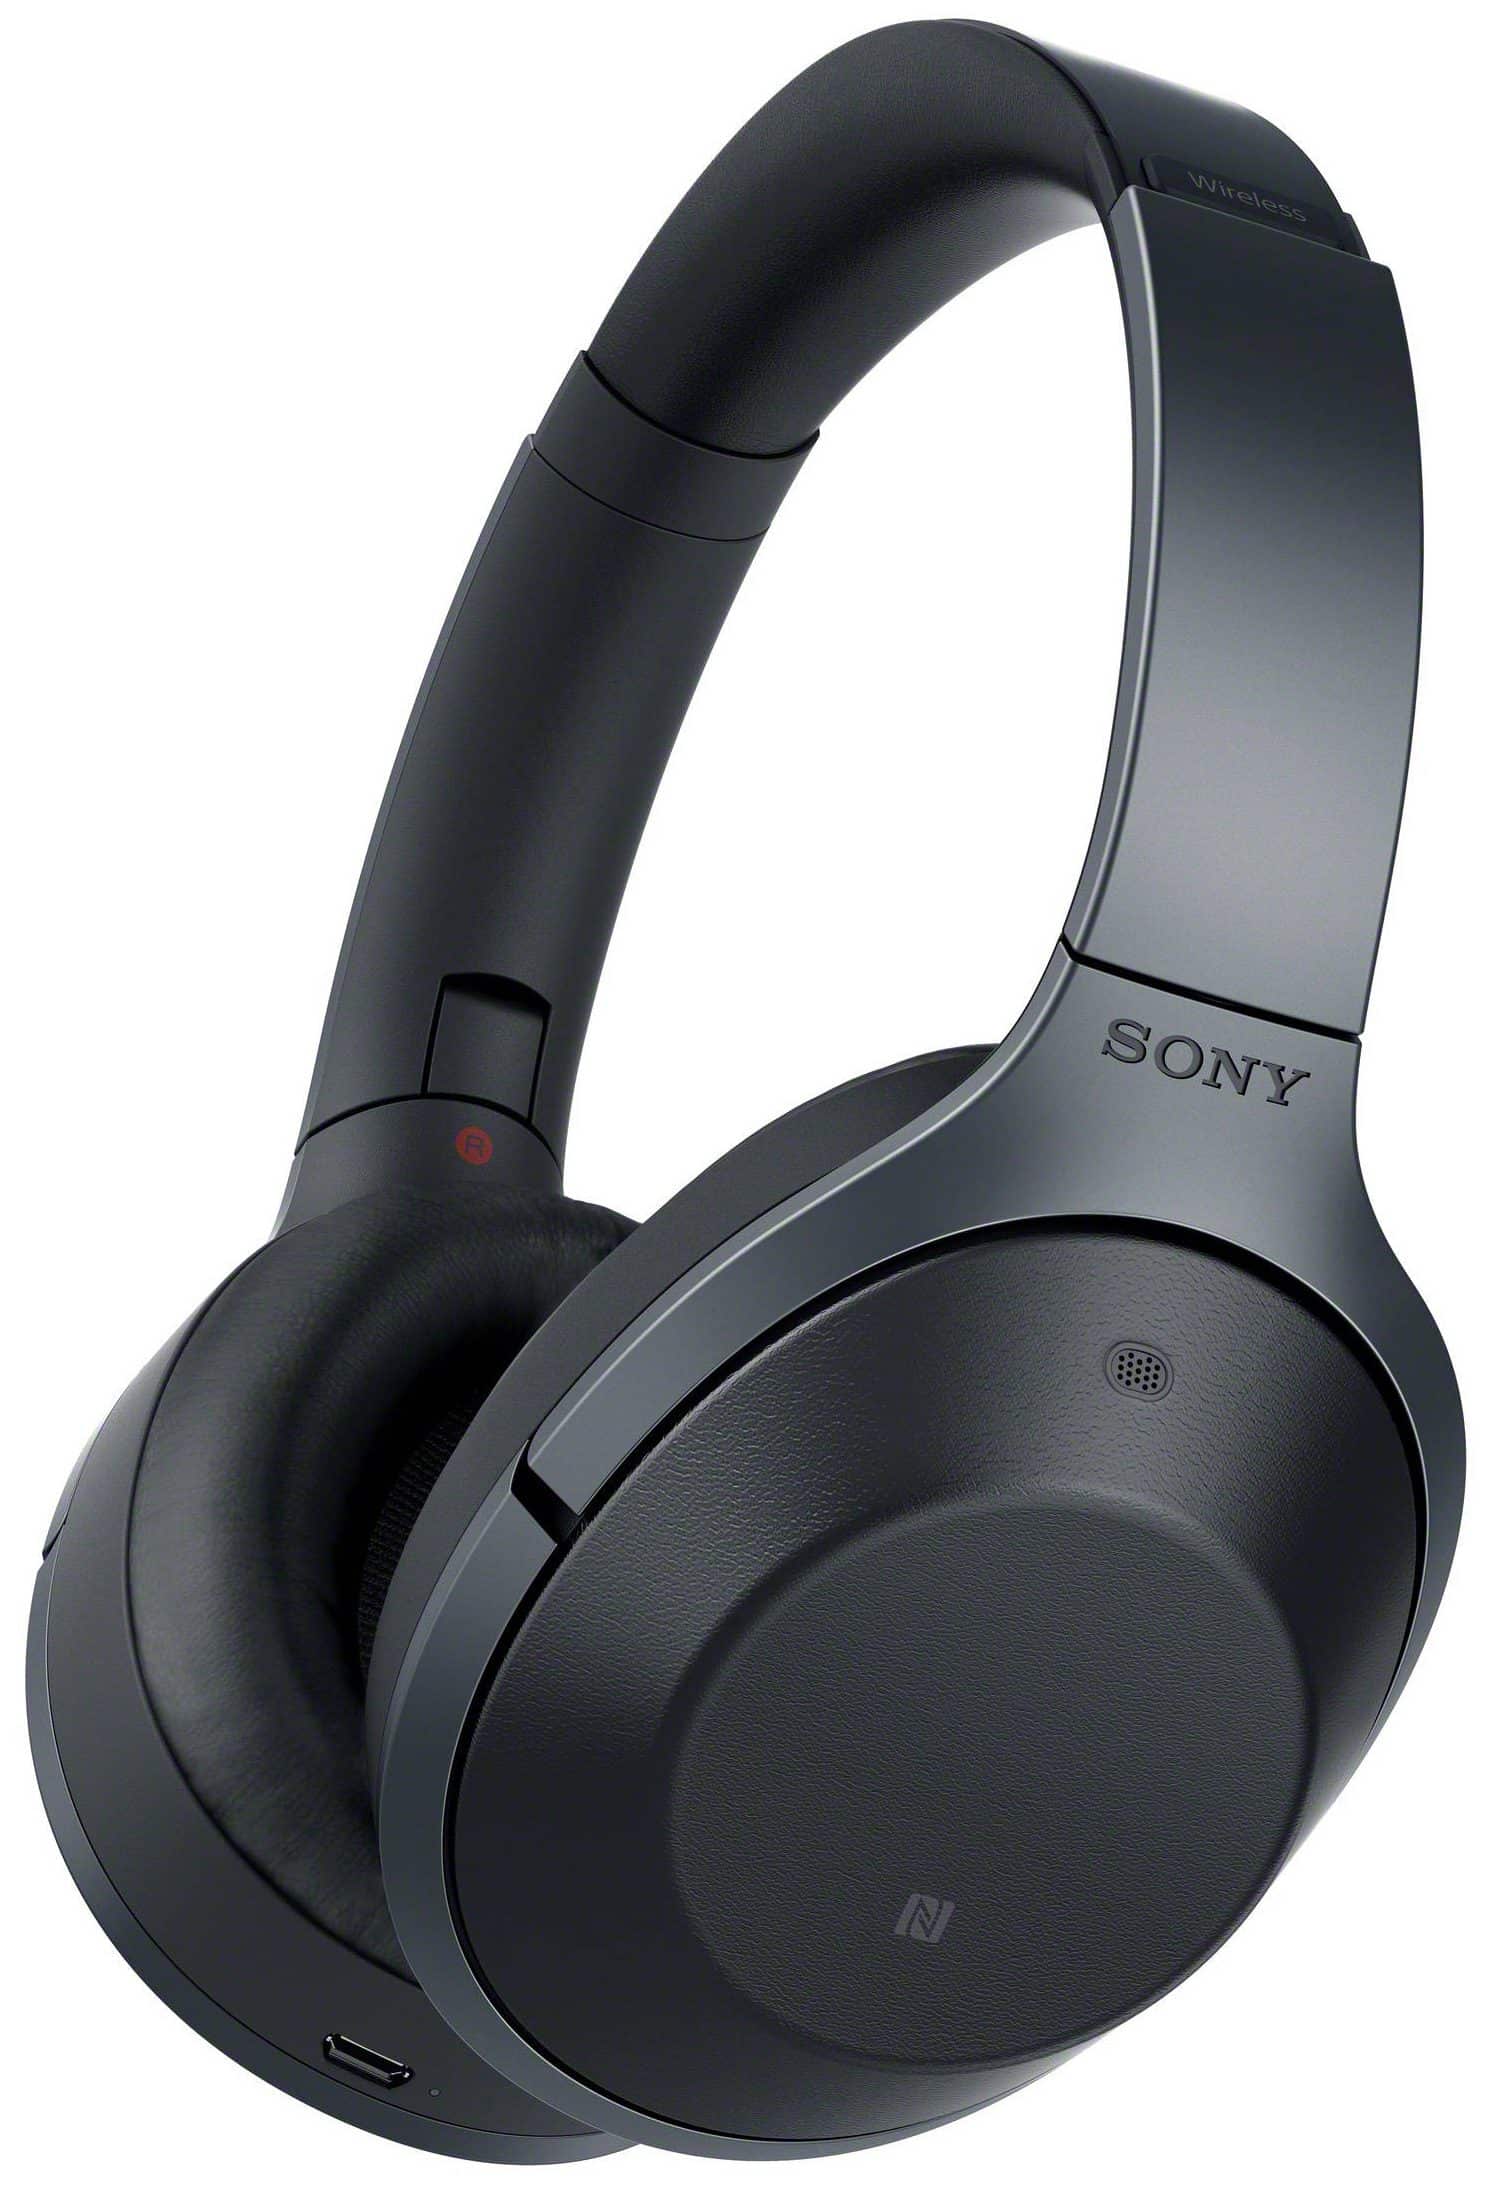 Sony 1000X Wireless Headphones